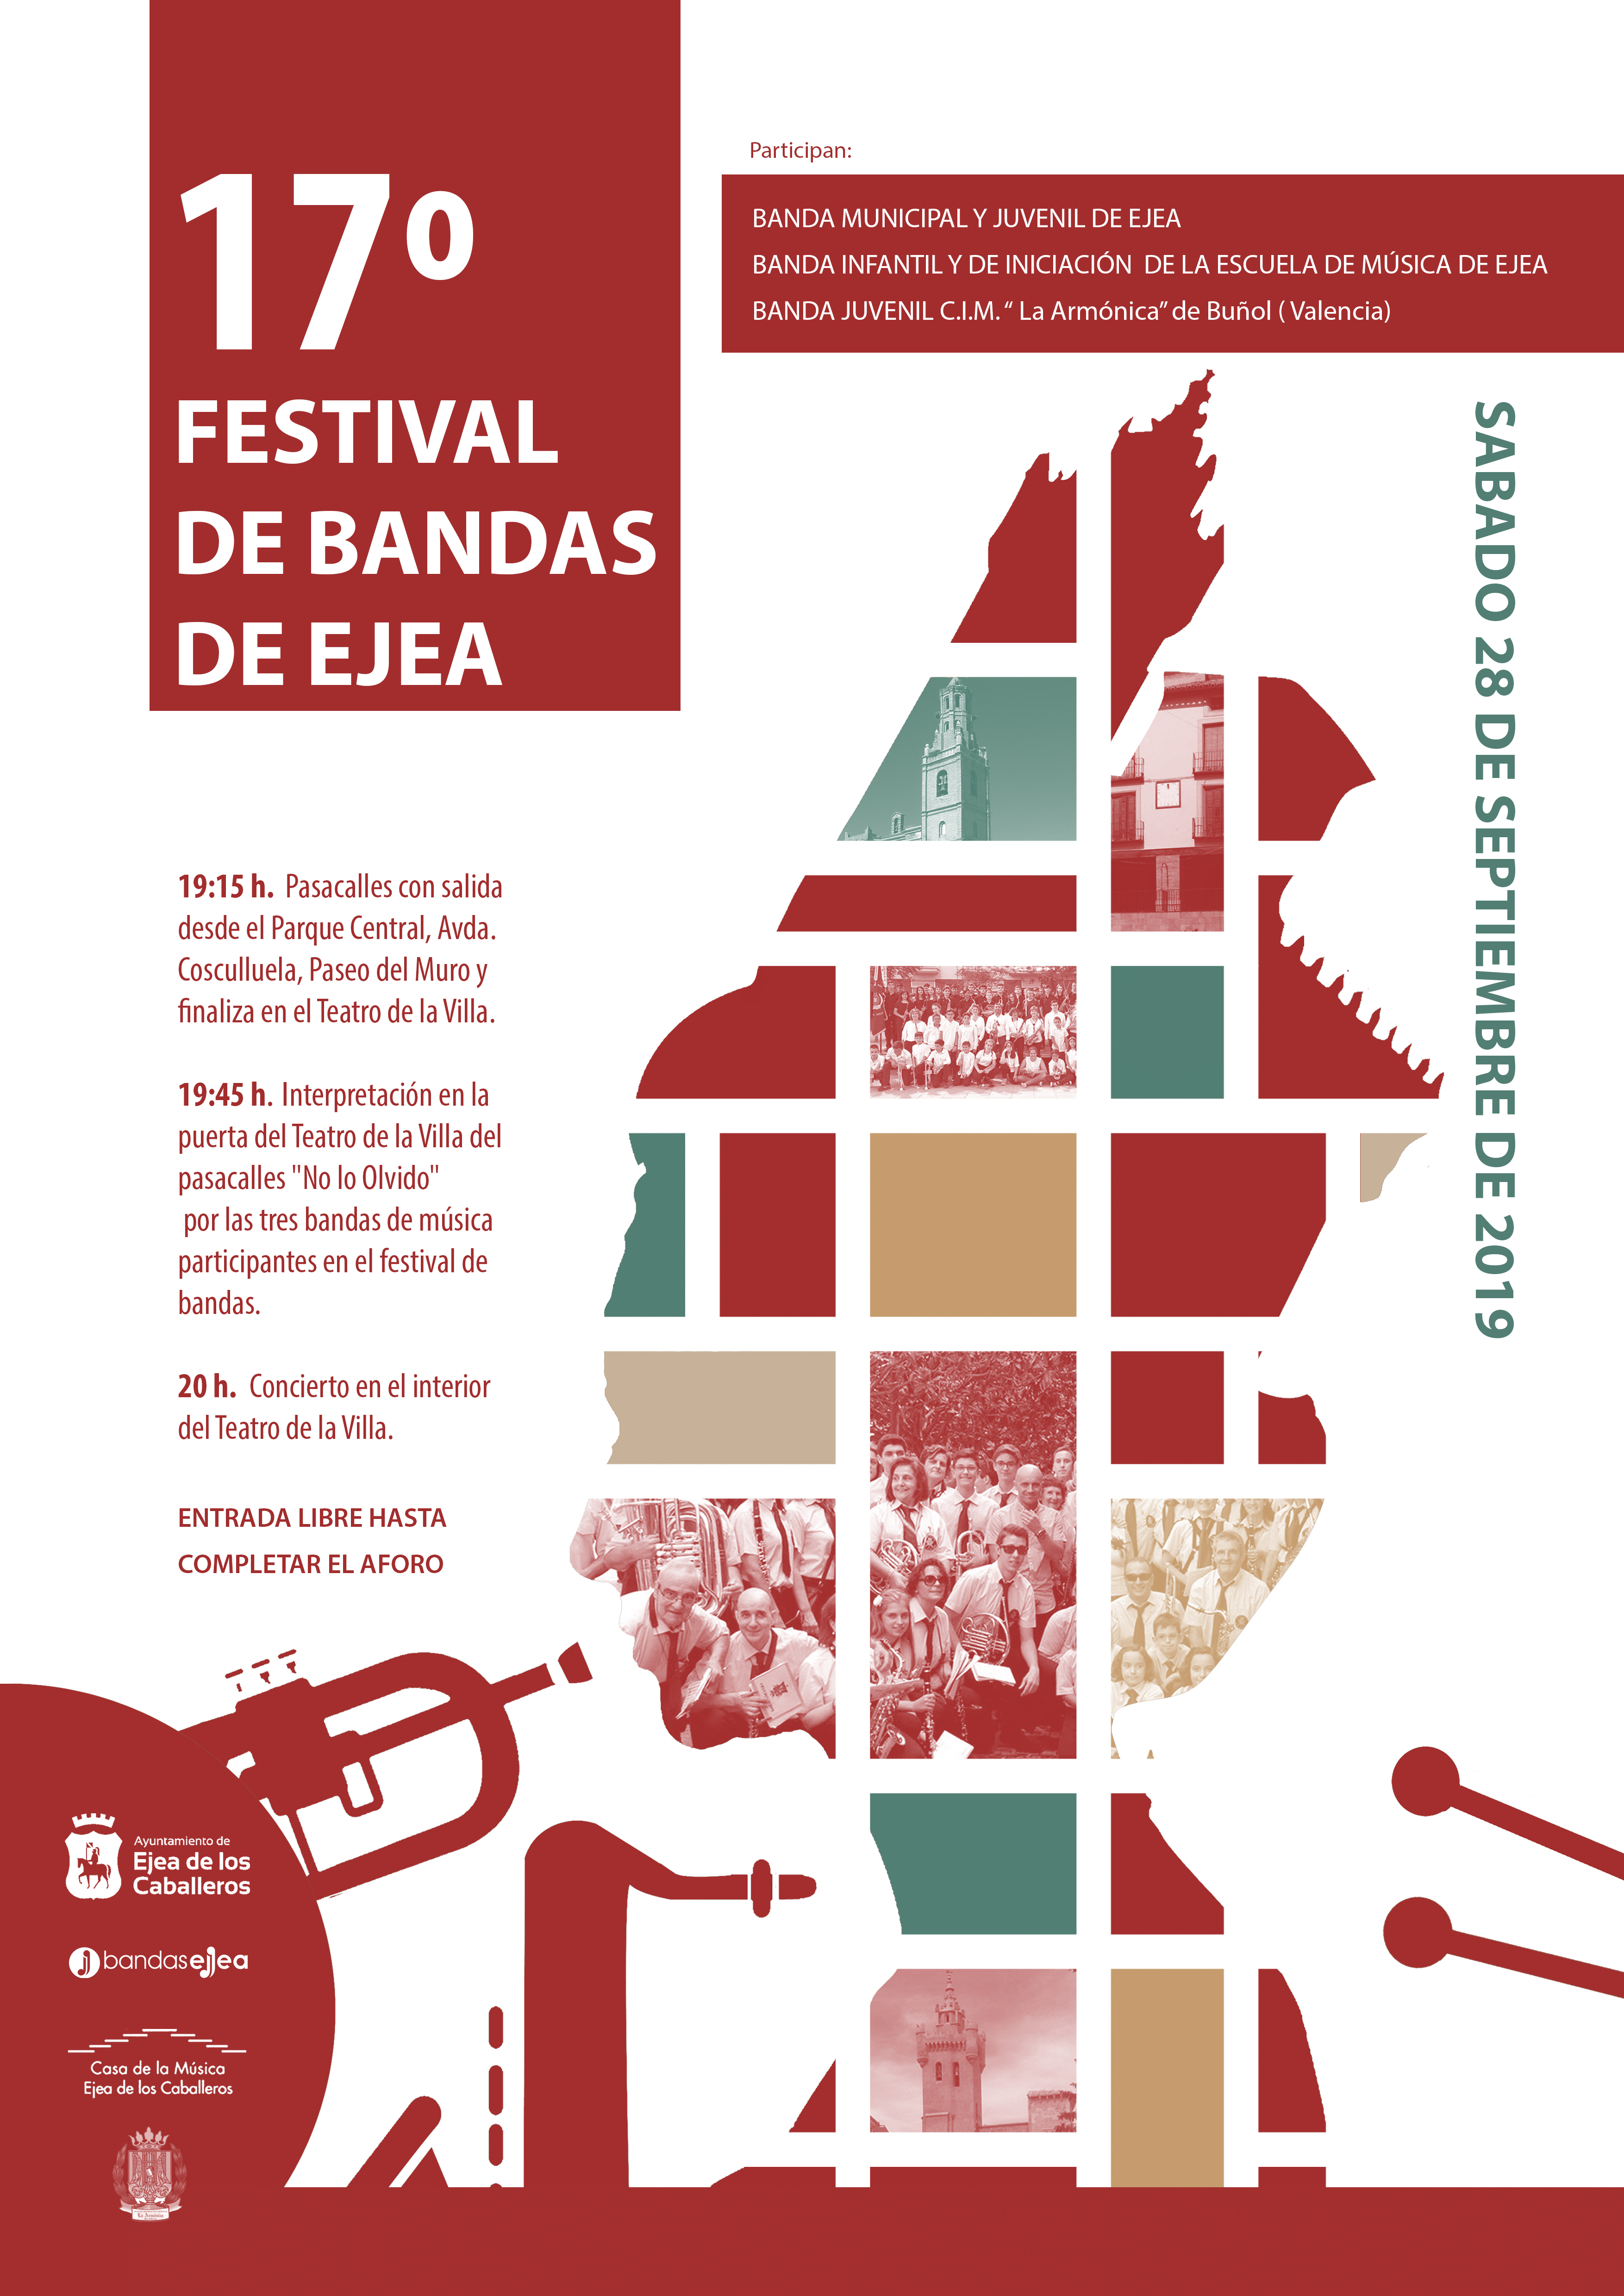 En este momento estás viendo 17º Festival de Bandas de Ejea: Encuentro cultural y humano de la Banda Juvenil de Buñol y las Bandas Infantil, Juvenil y Municipal de Ejea